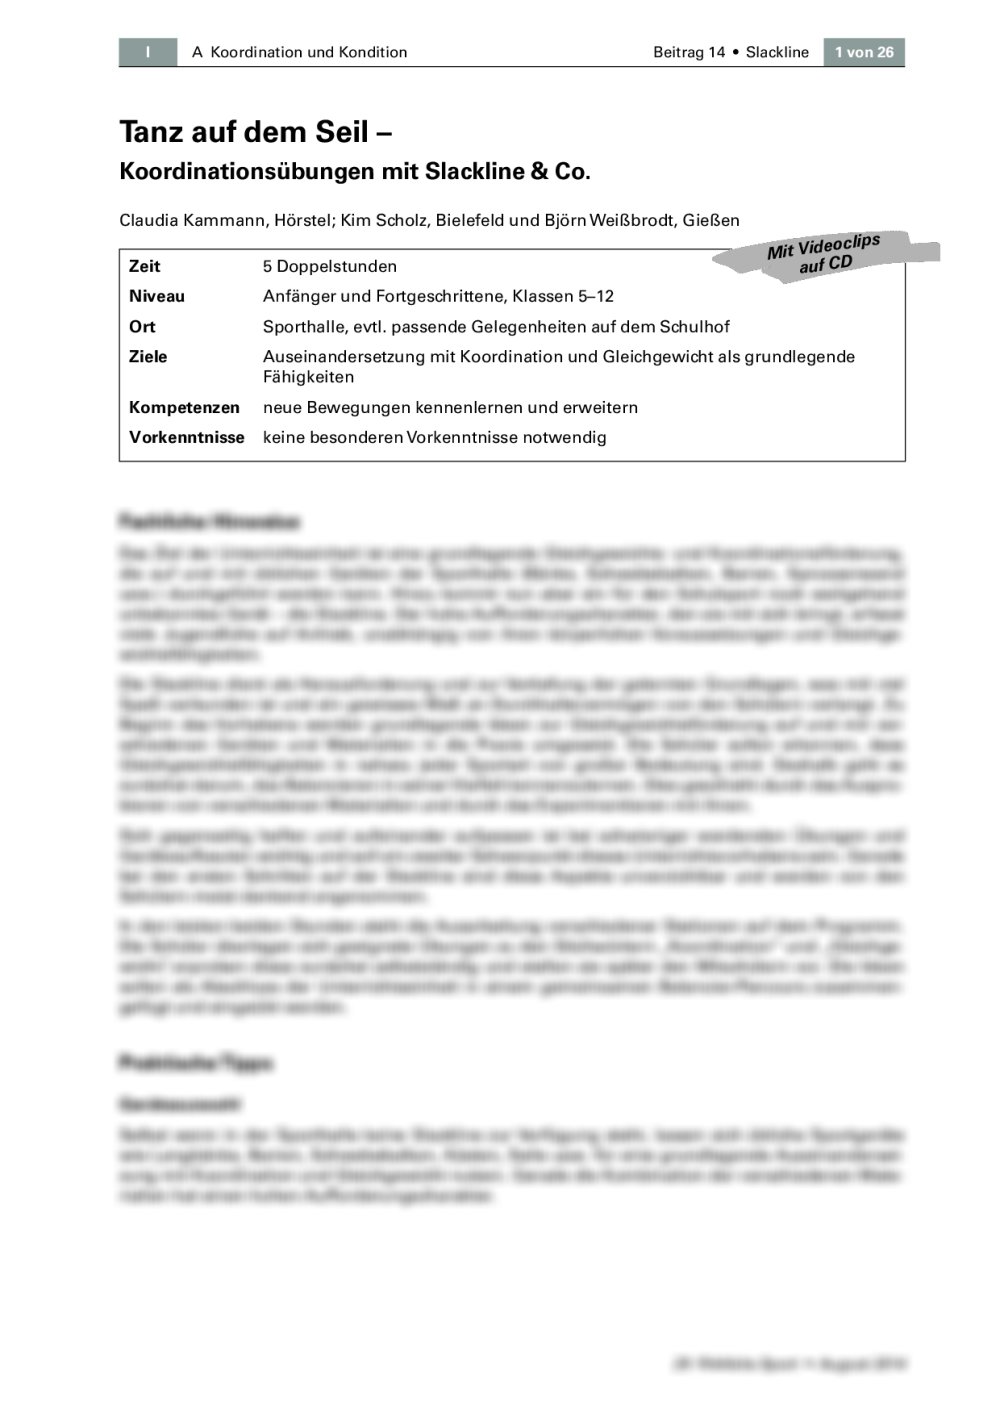 Koordinationsübungen mit Slackline & Co. - Seite 1